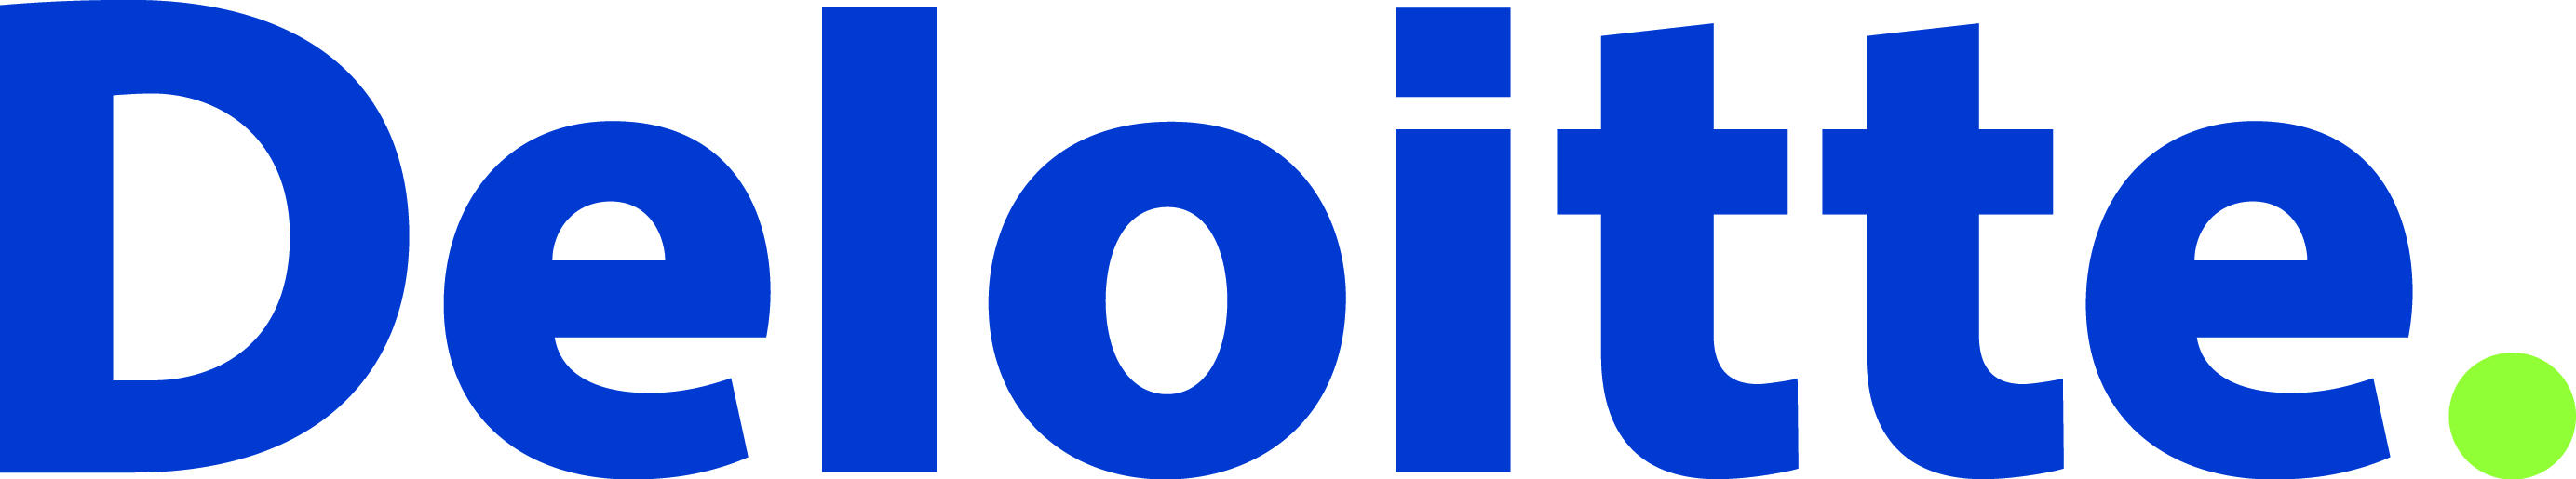 Deloitte colour logo